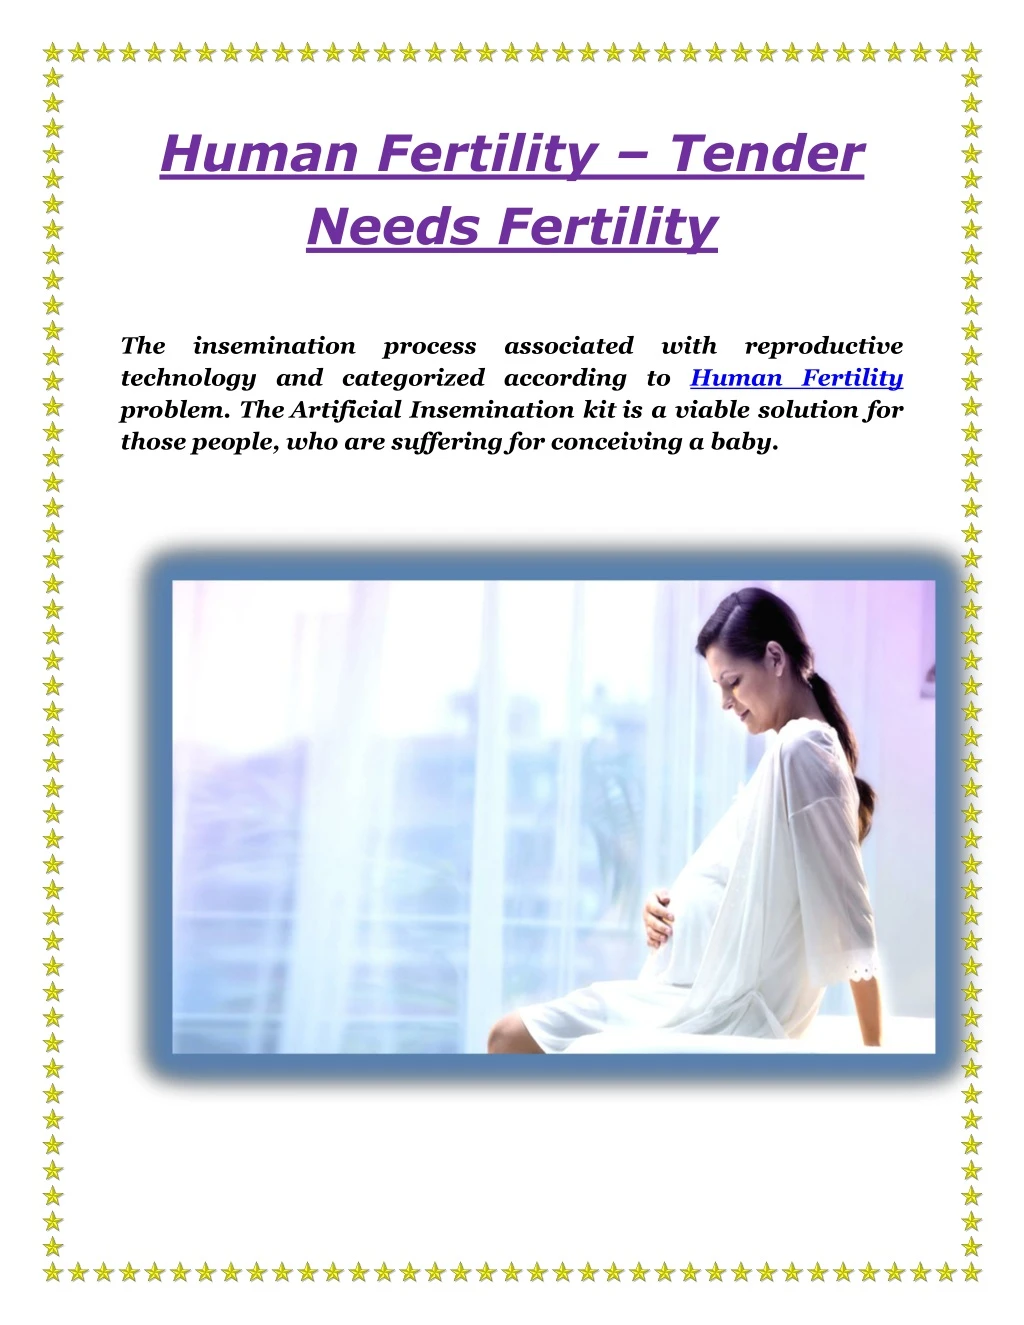 human fertility tender needs fertility